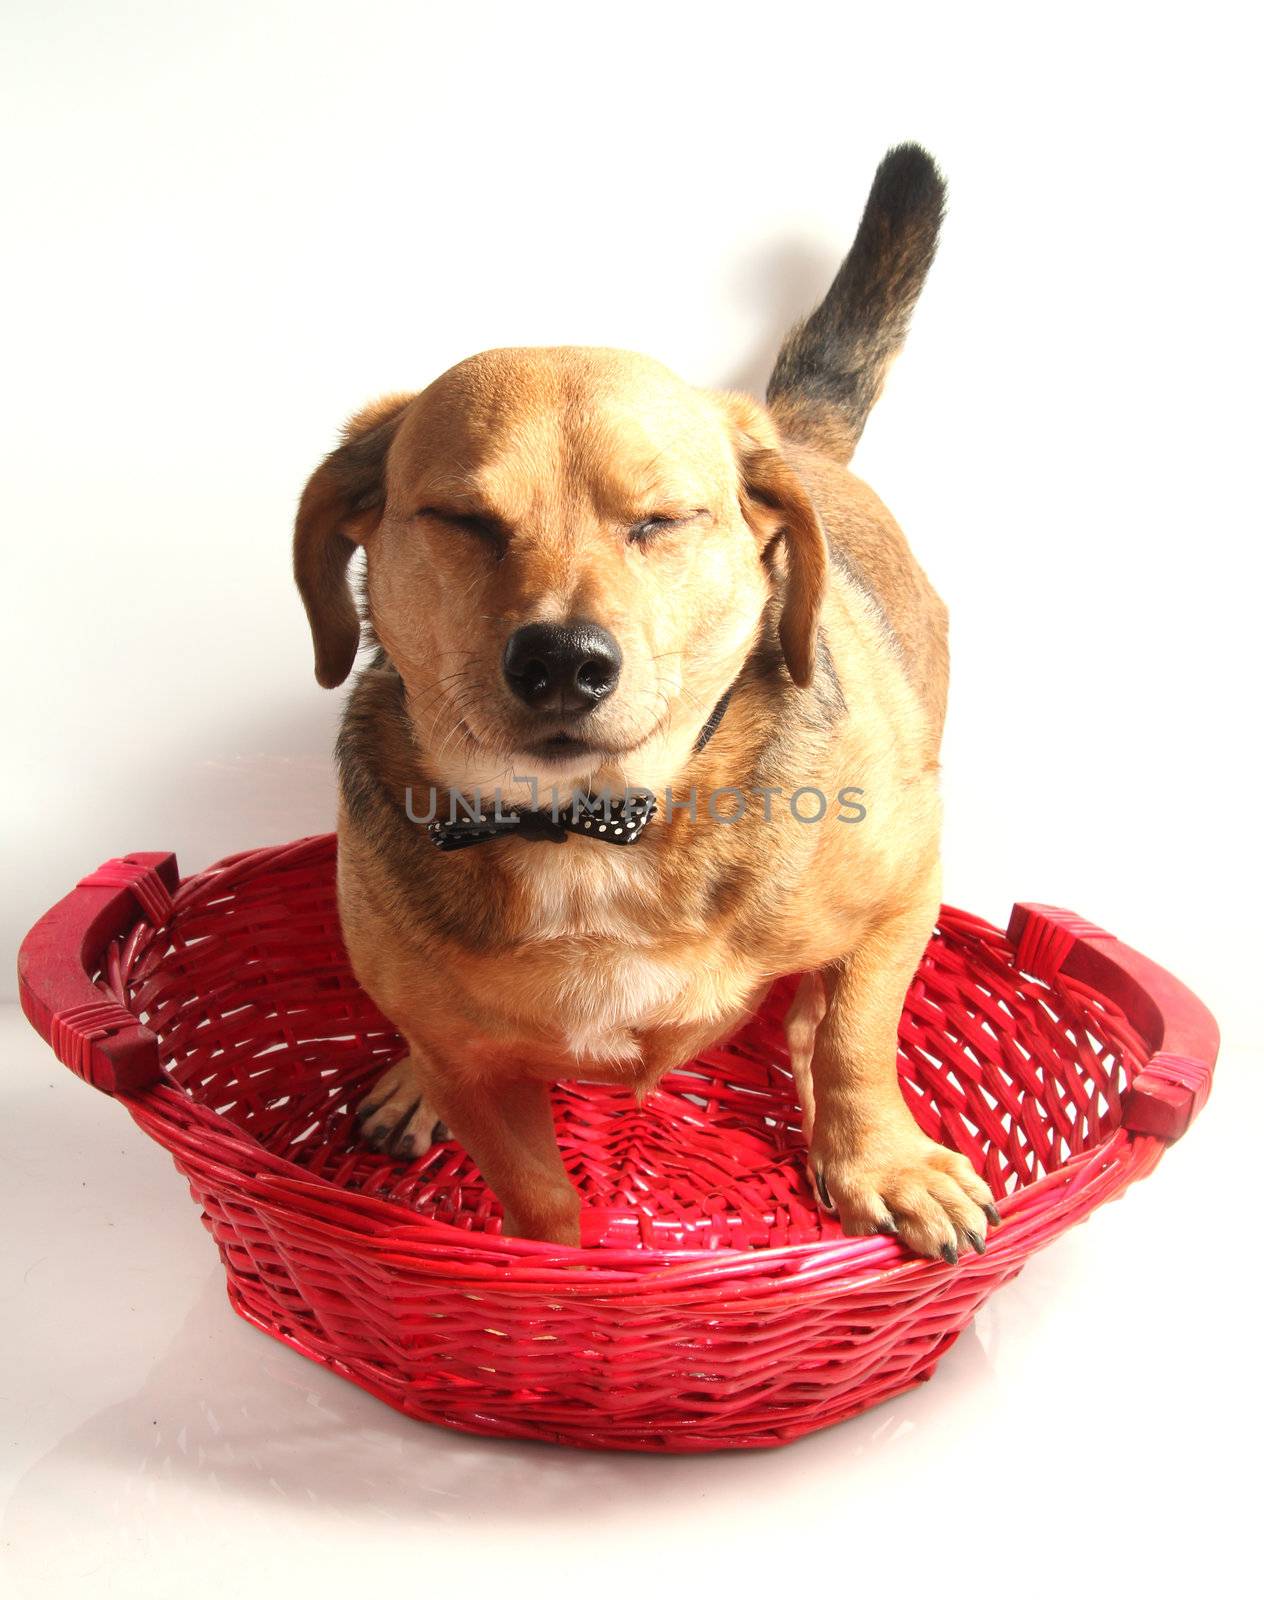 happy dutchshound in the red basket